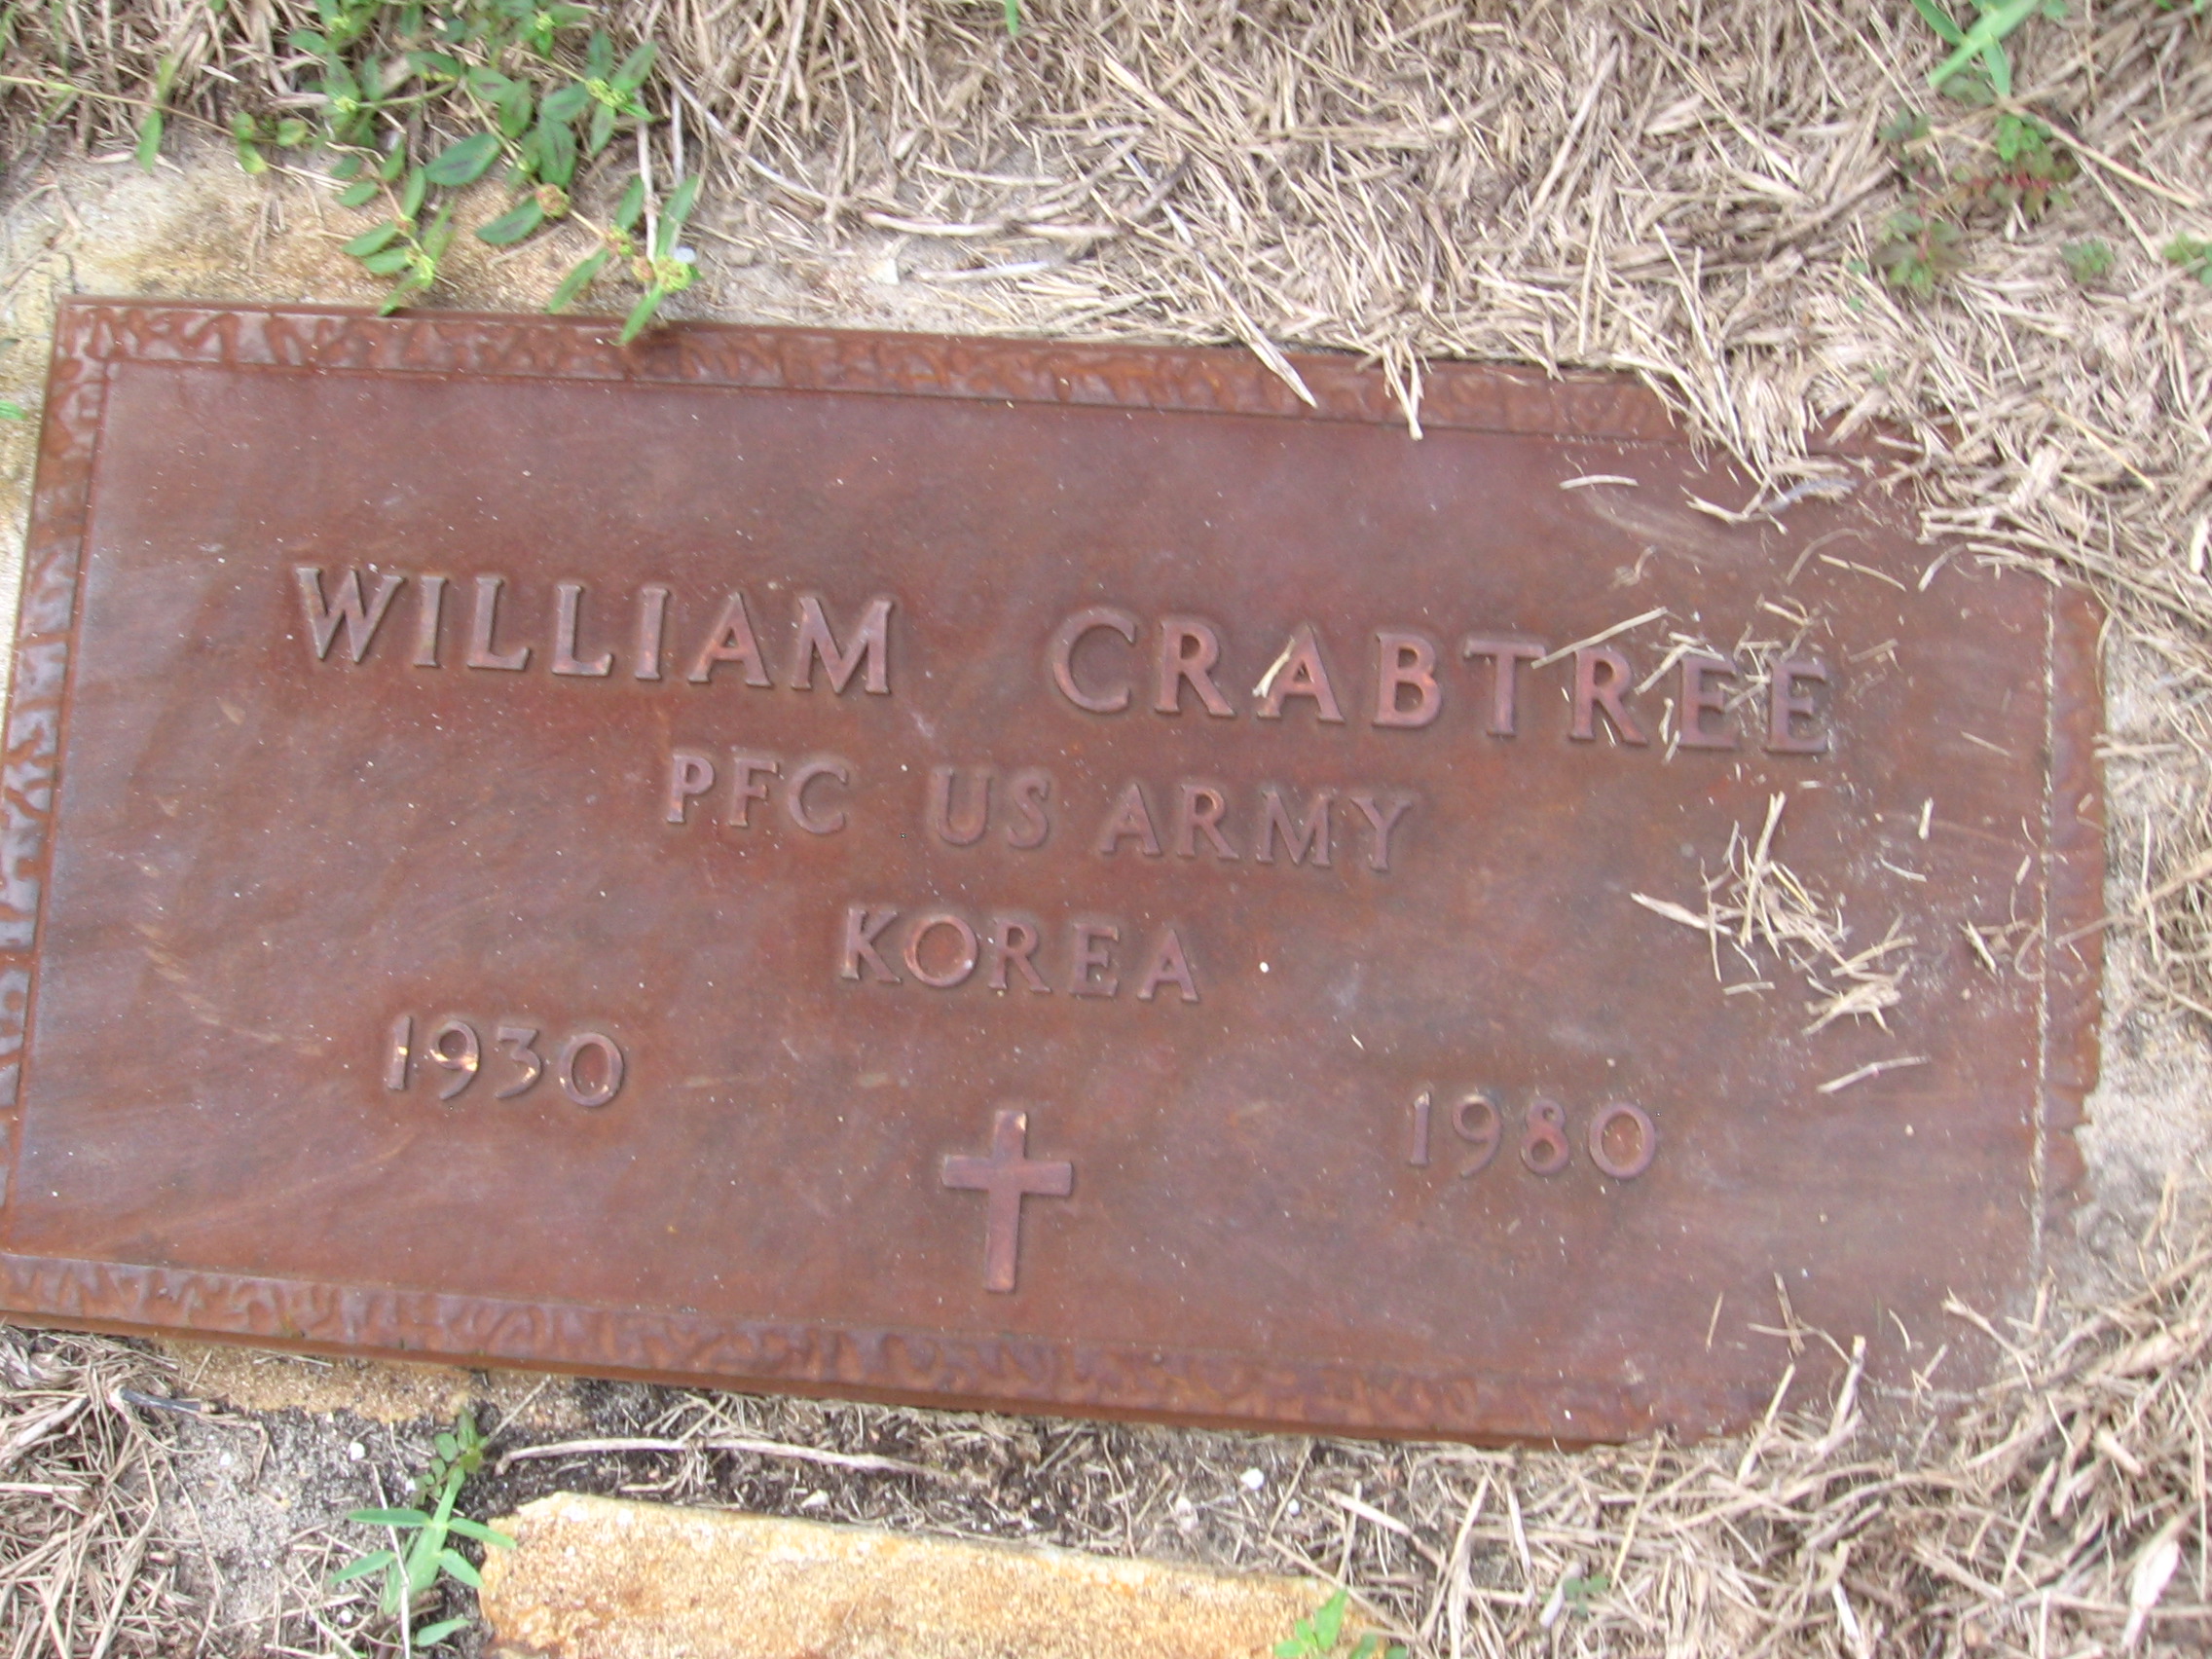 PFC William Crabtree